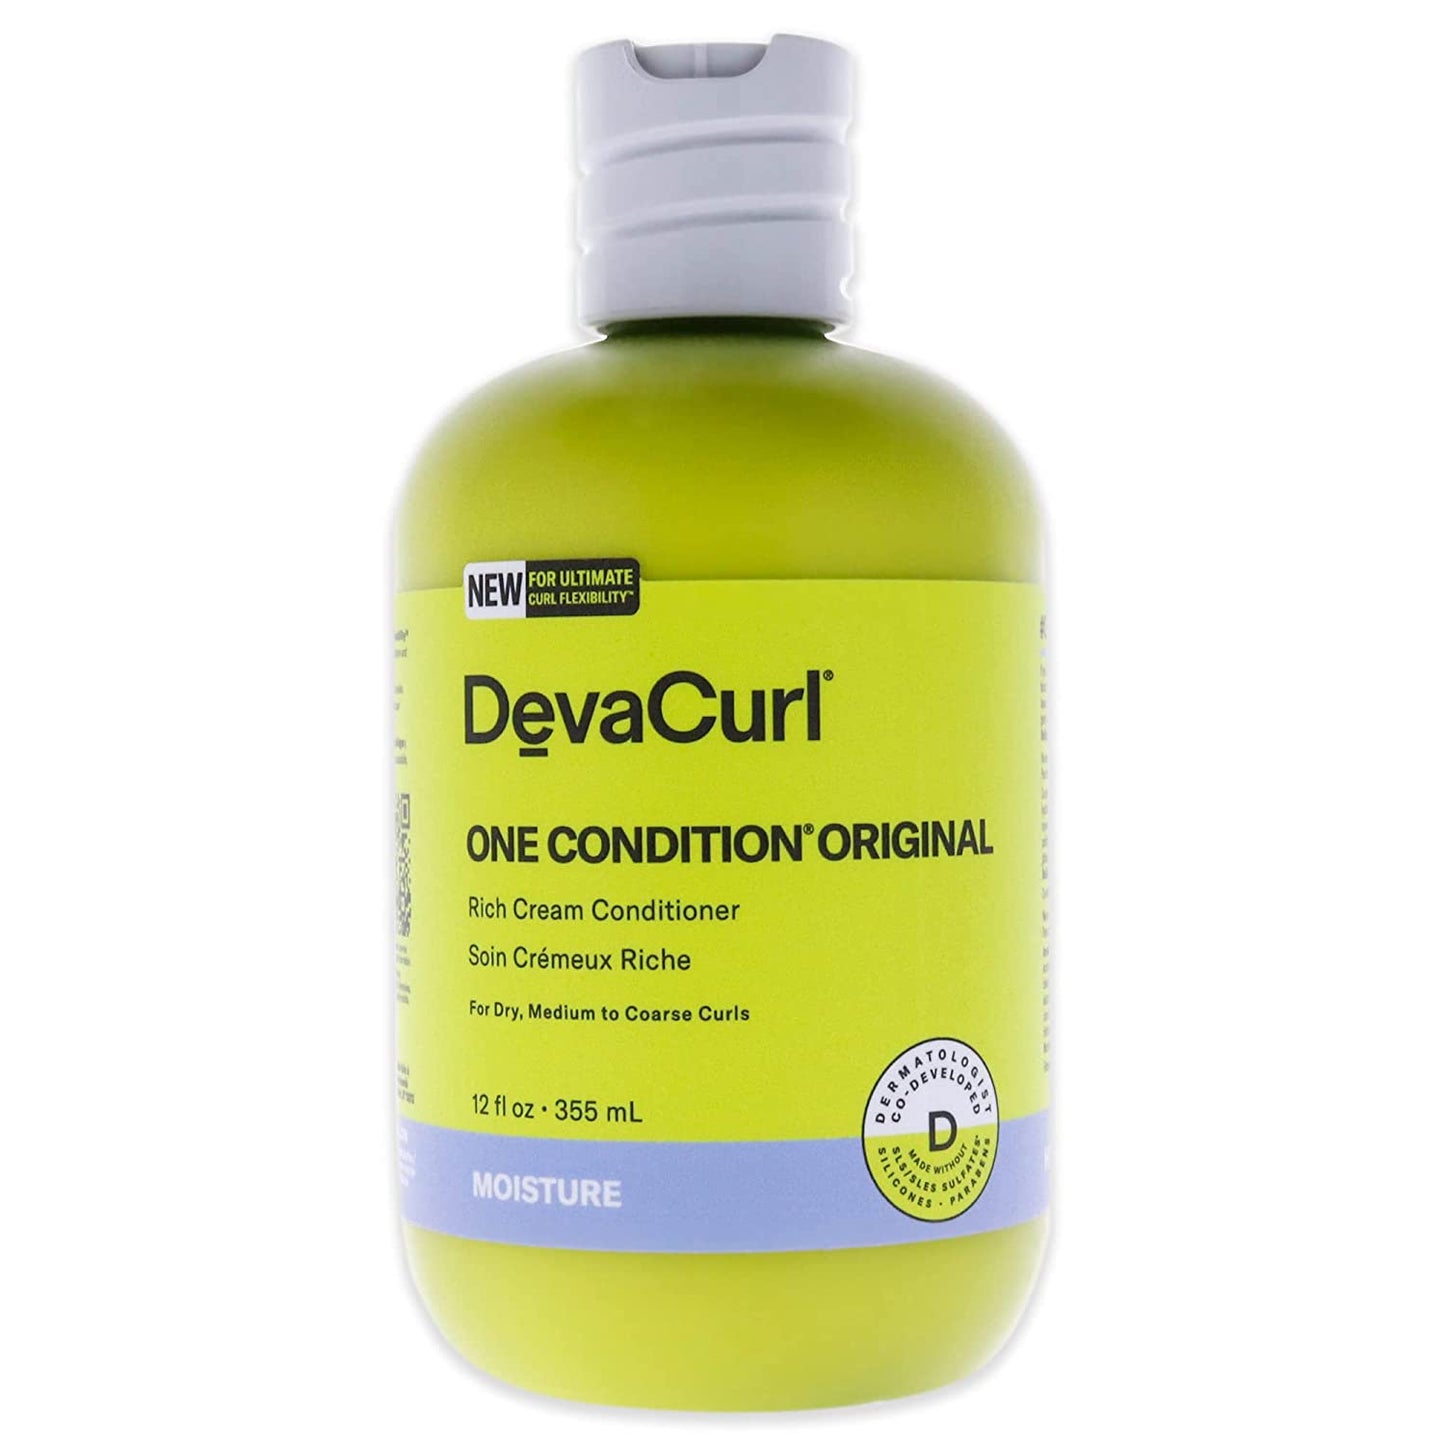 Devacurl Original One Condition Ultra Creamy Daily Conditioner, 12 Oz